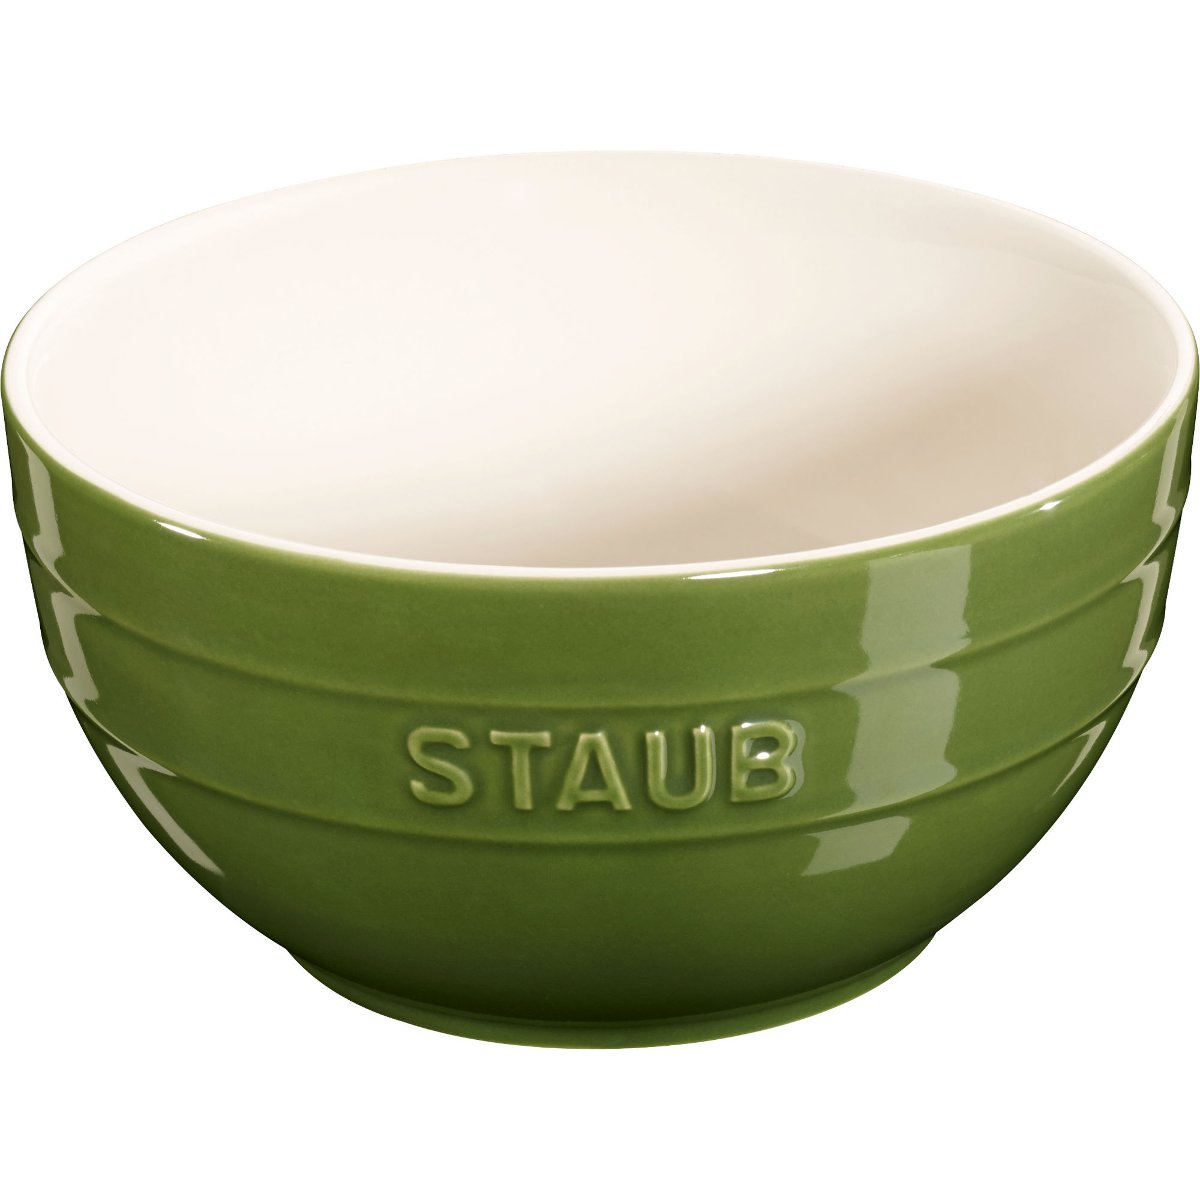 Staub Staub - ceramiczna miska, zielona 40510-796-0